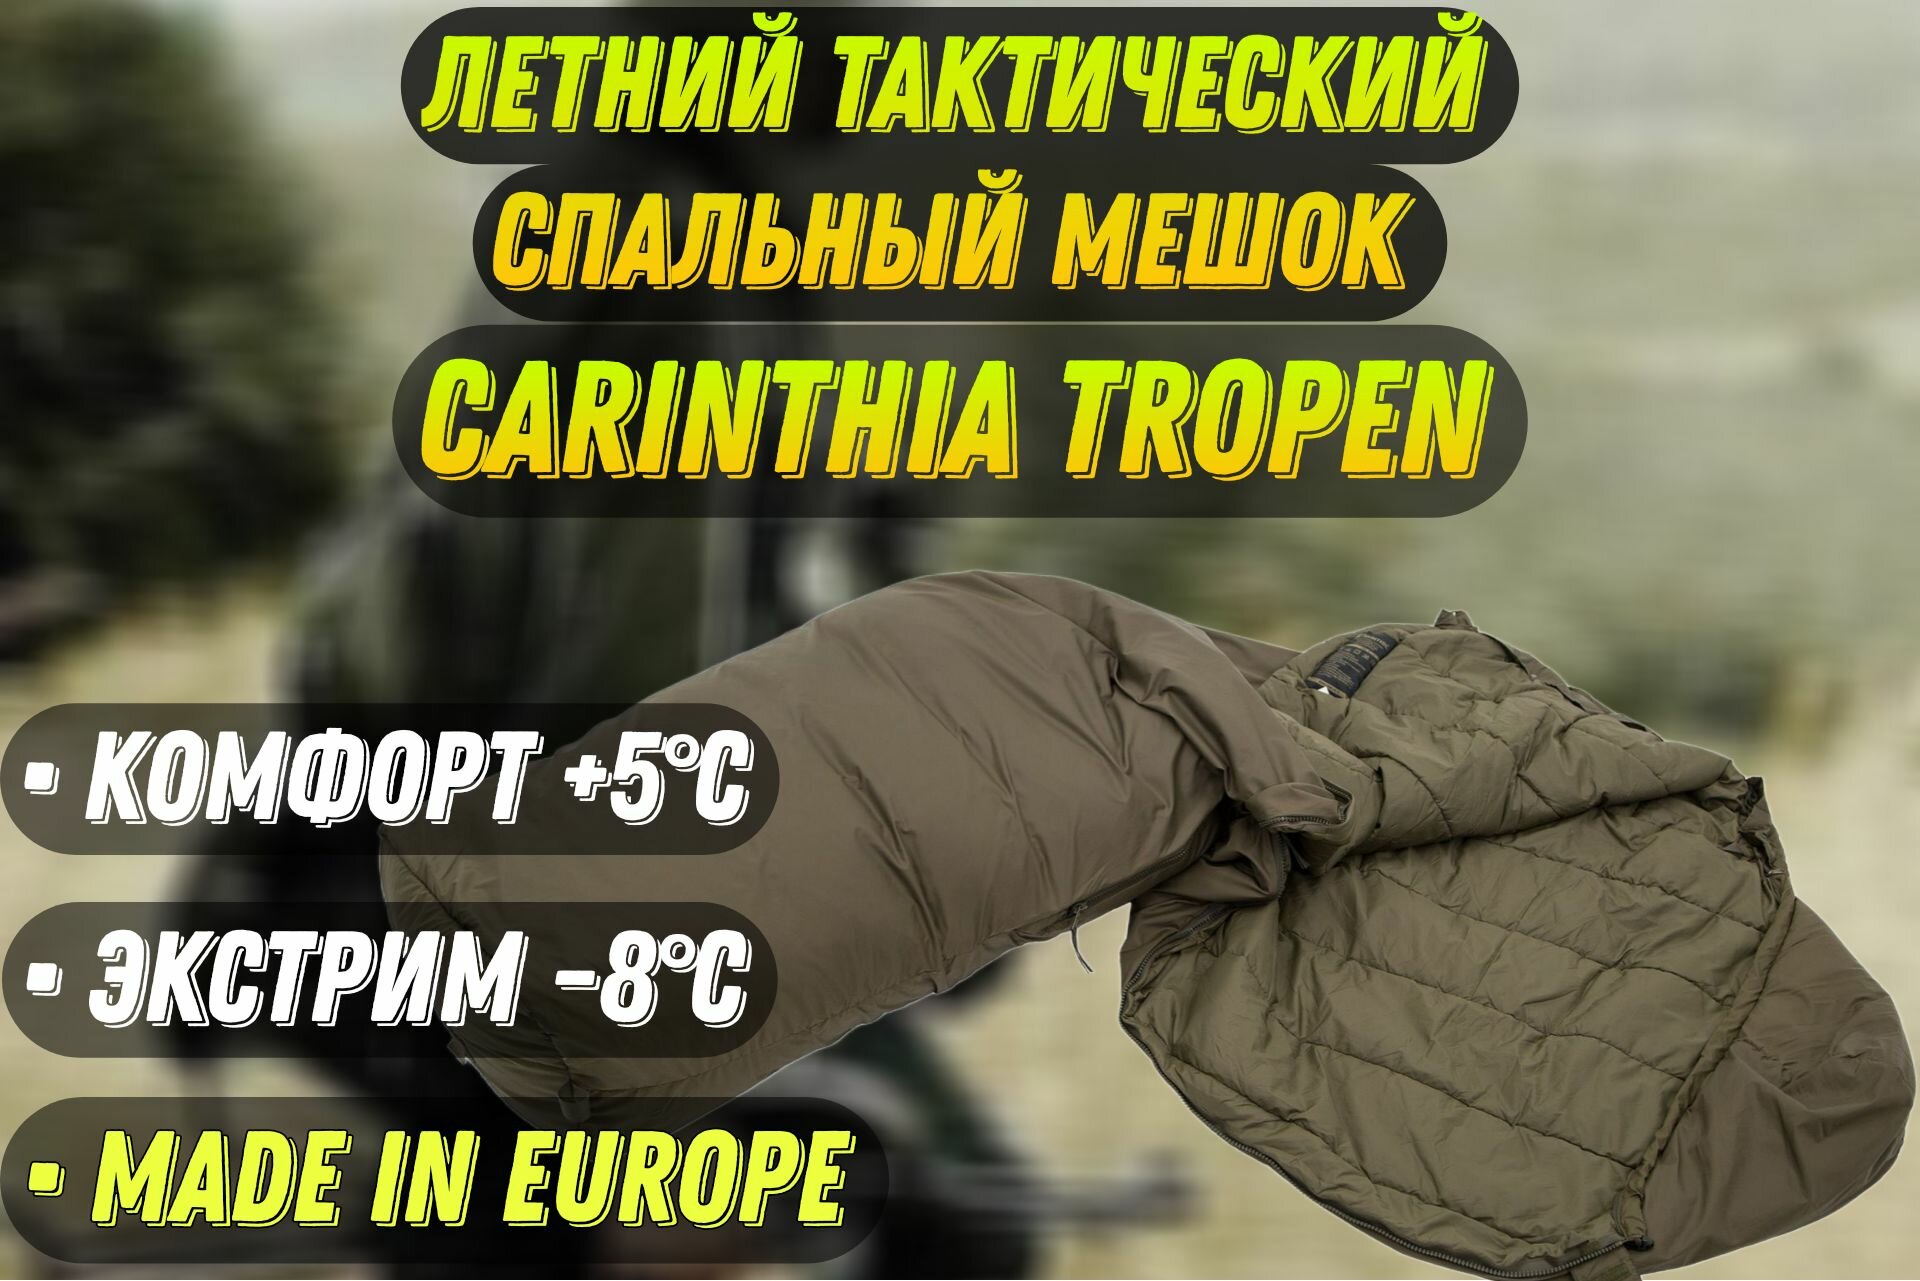 Летний Тактический Спальный Мешок Carinthia Tropen G-Loft, размер M, цвет оливковый